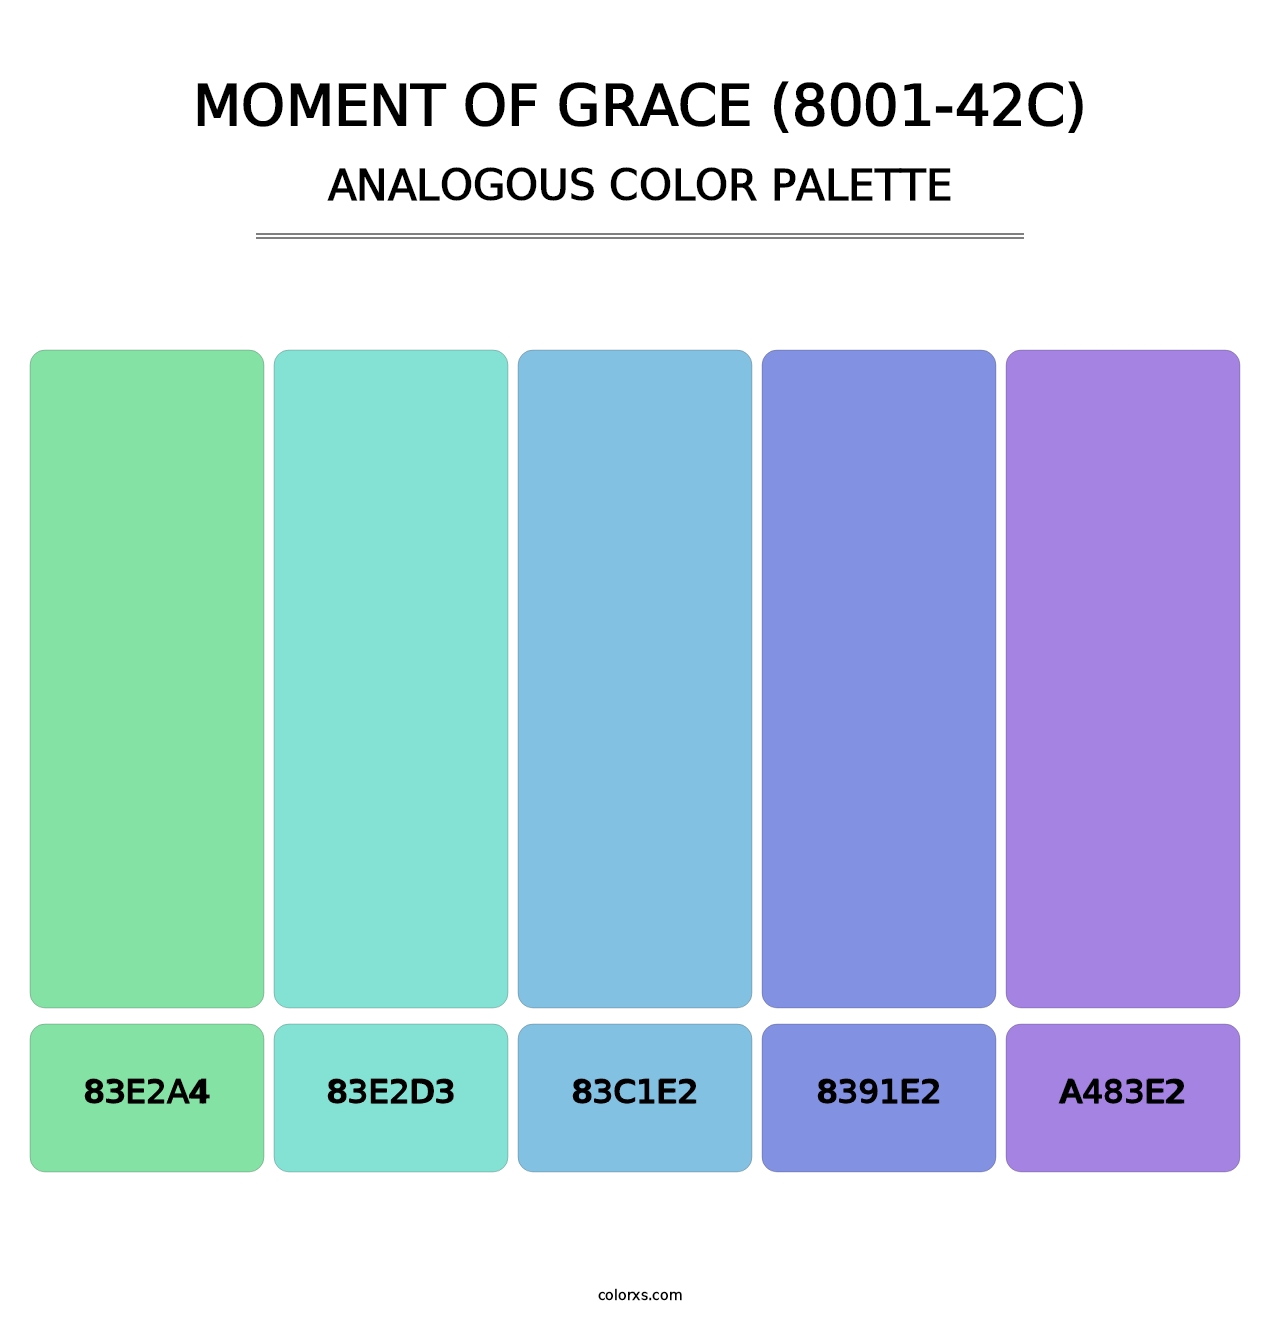 Moment of Grace (8001-42C) - Analogous Color Palette